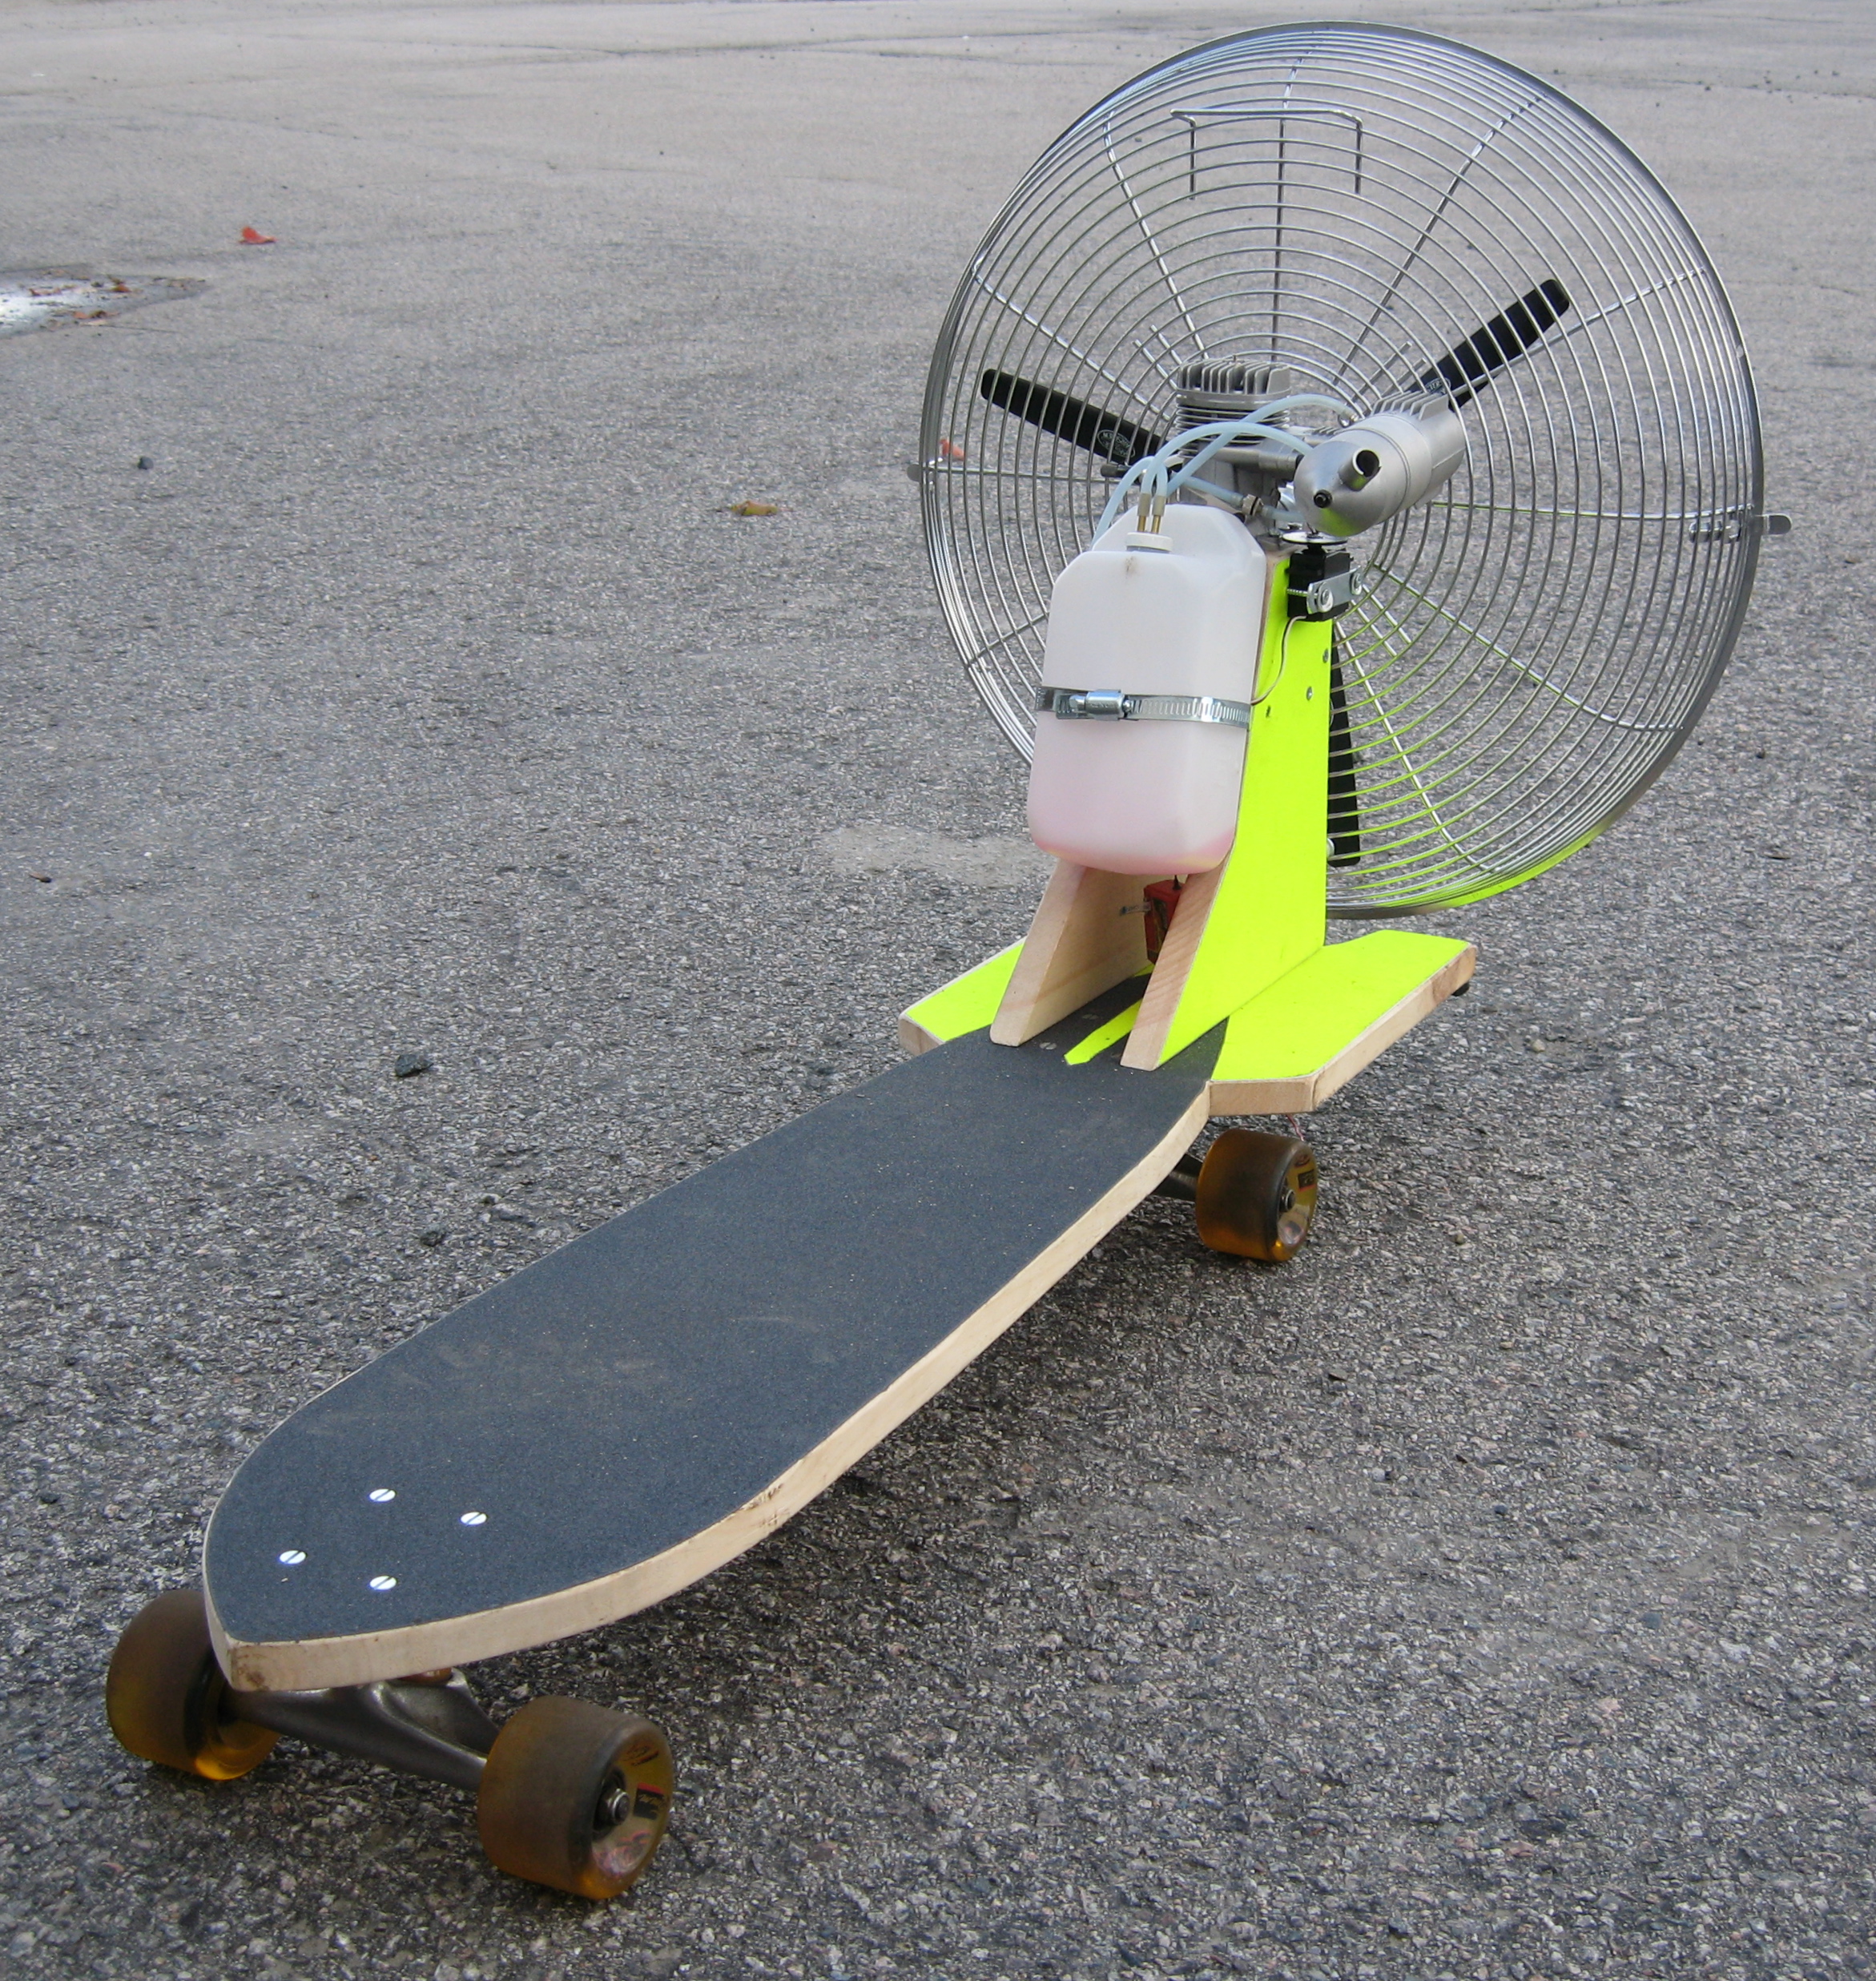 Propeller Powered Skateboard